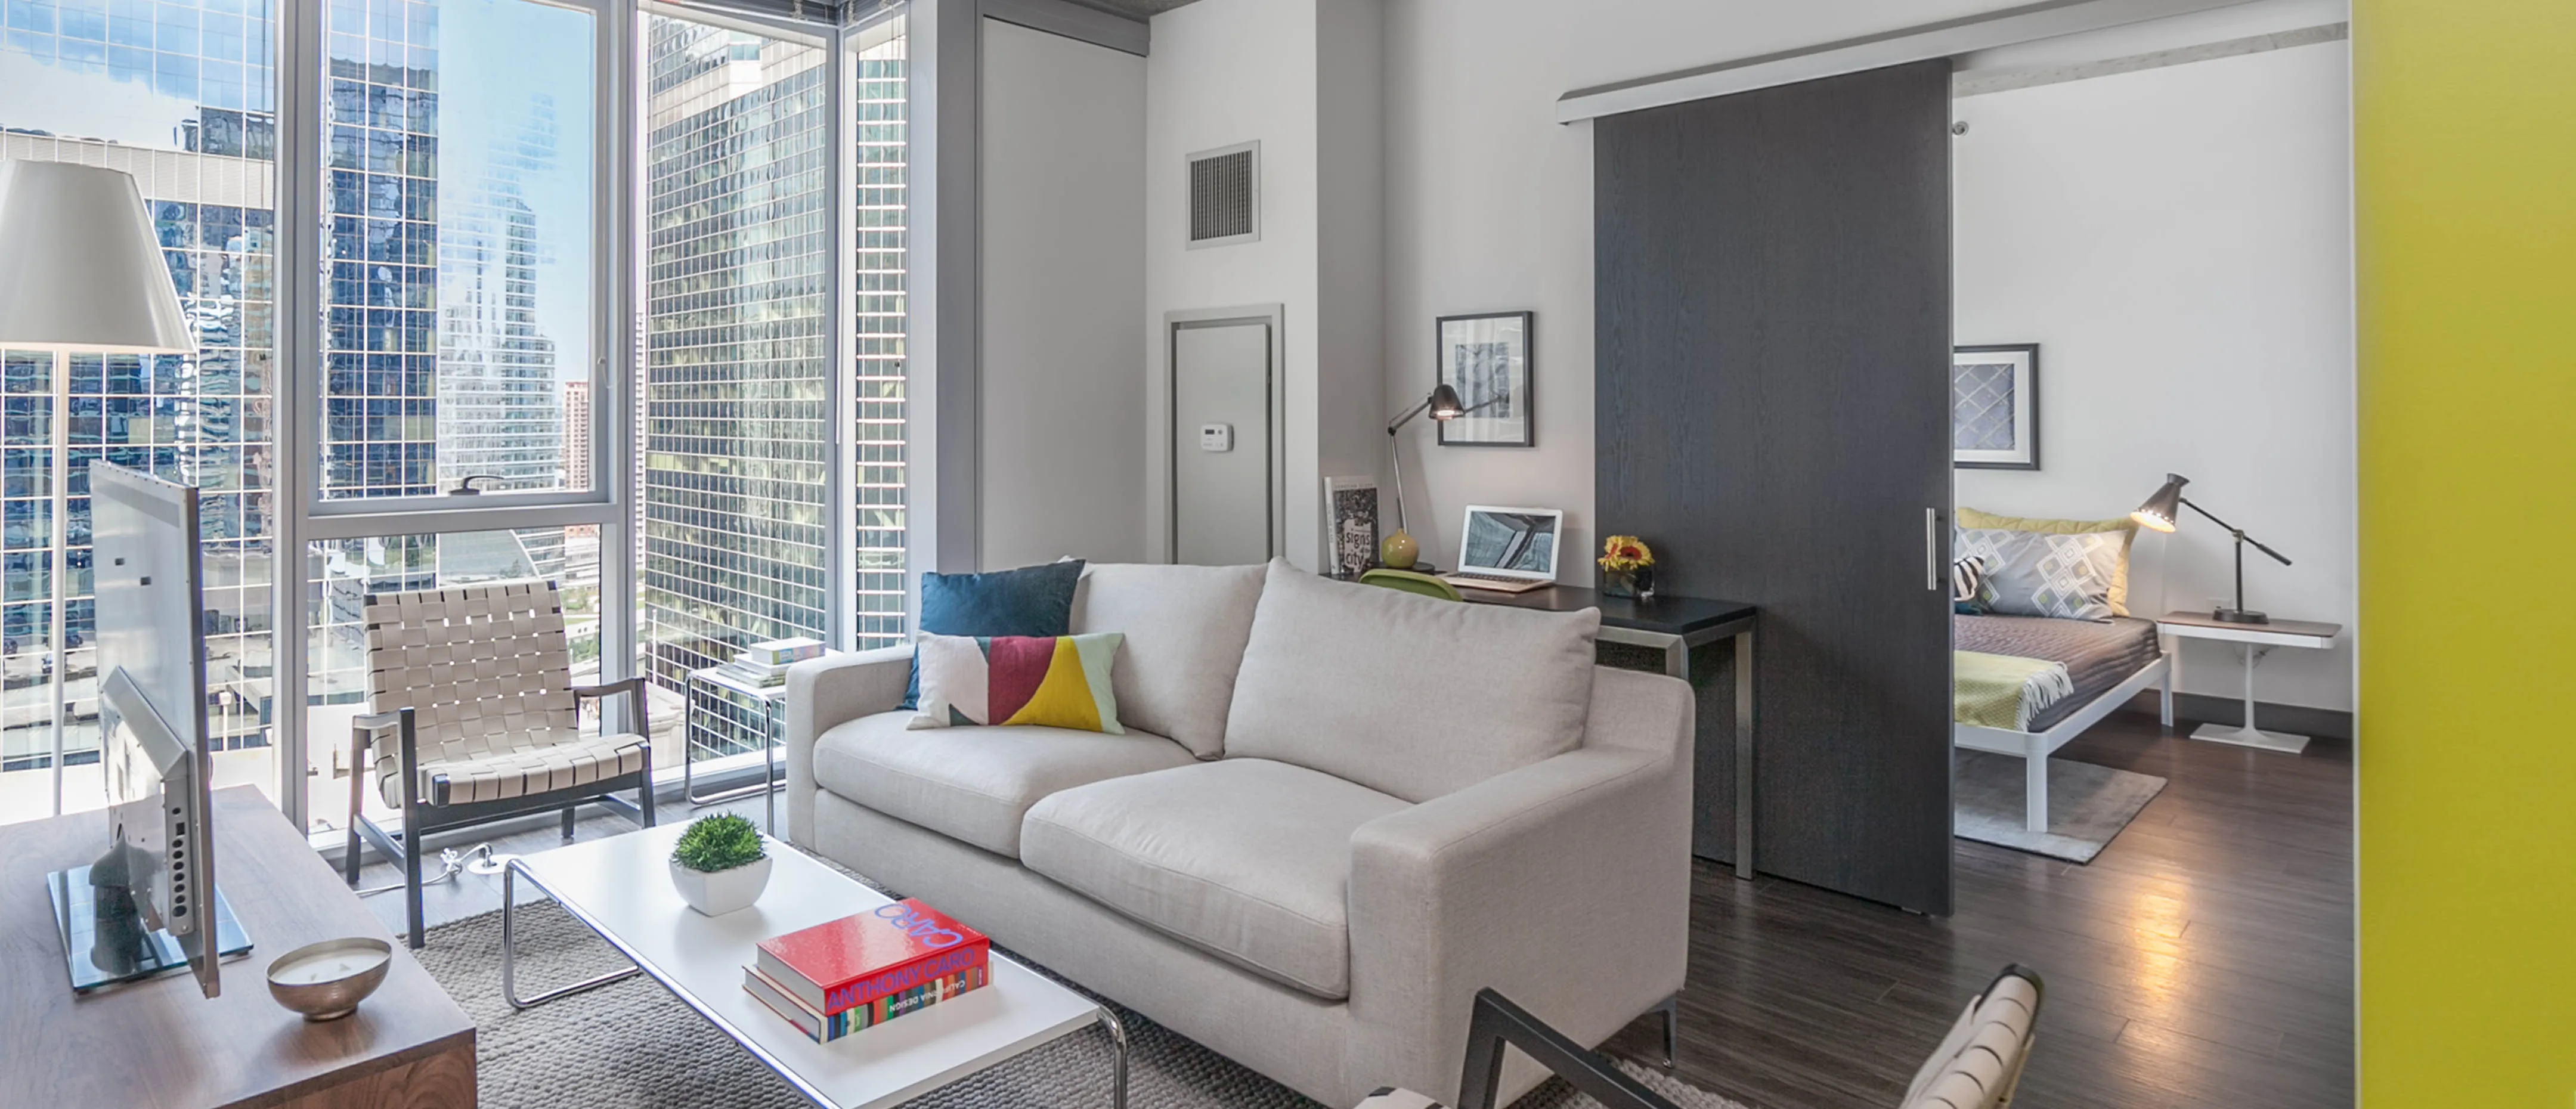 1 bedroom apartments in Chicago neighborhoods